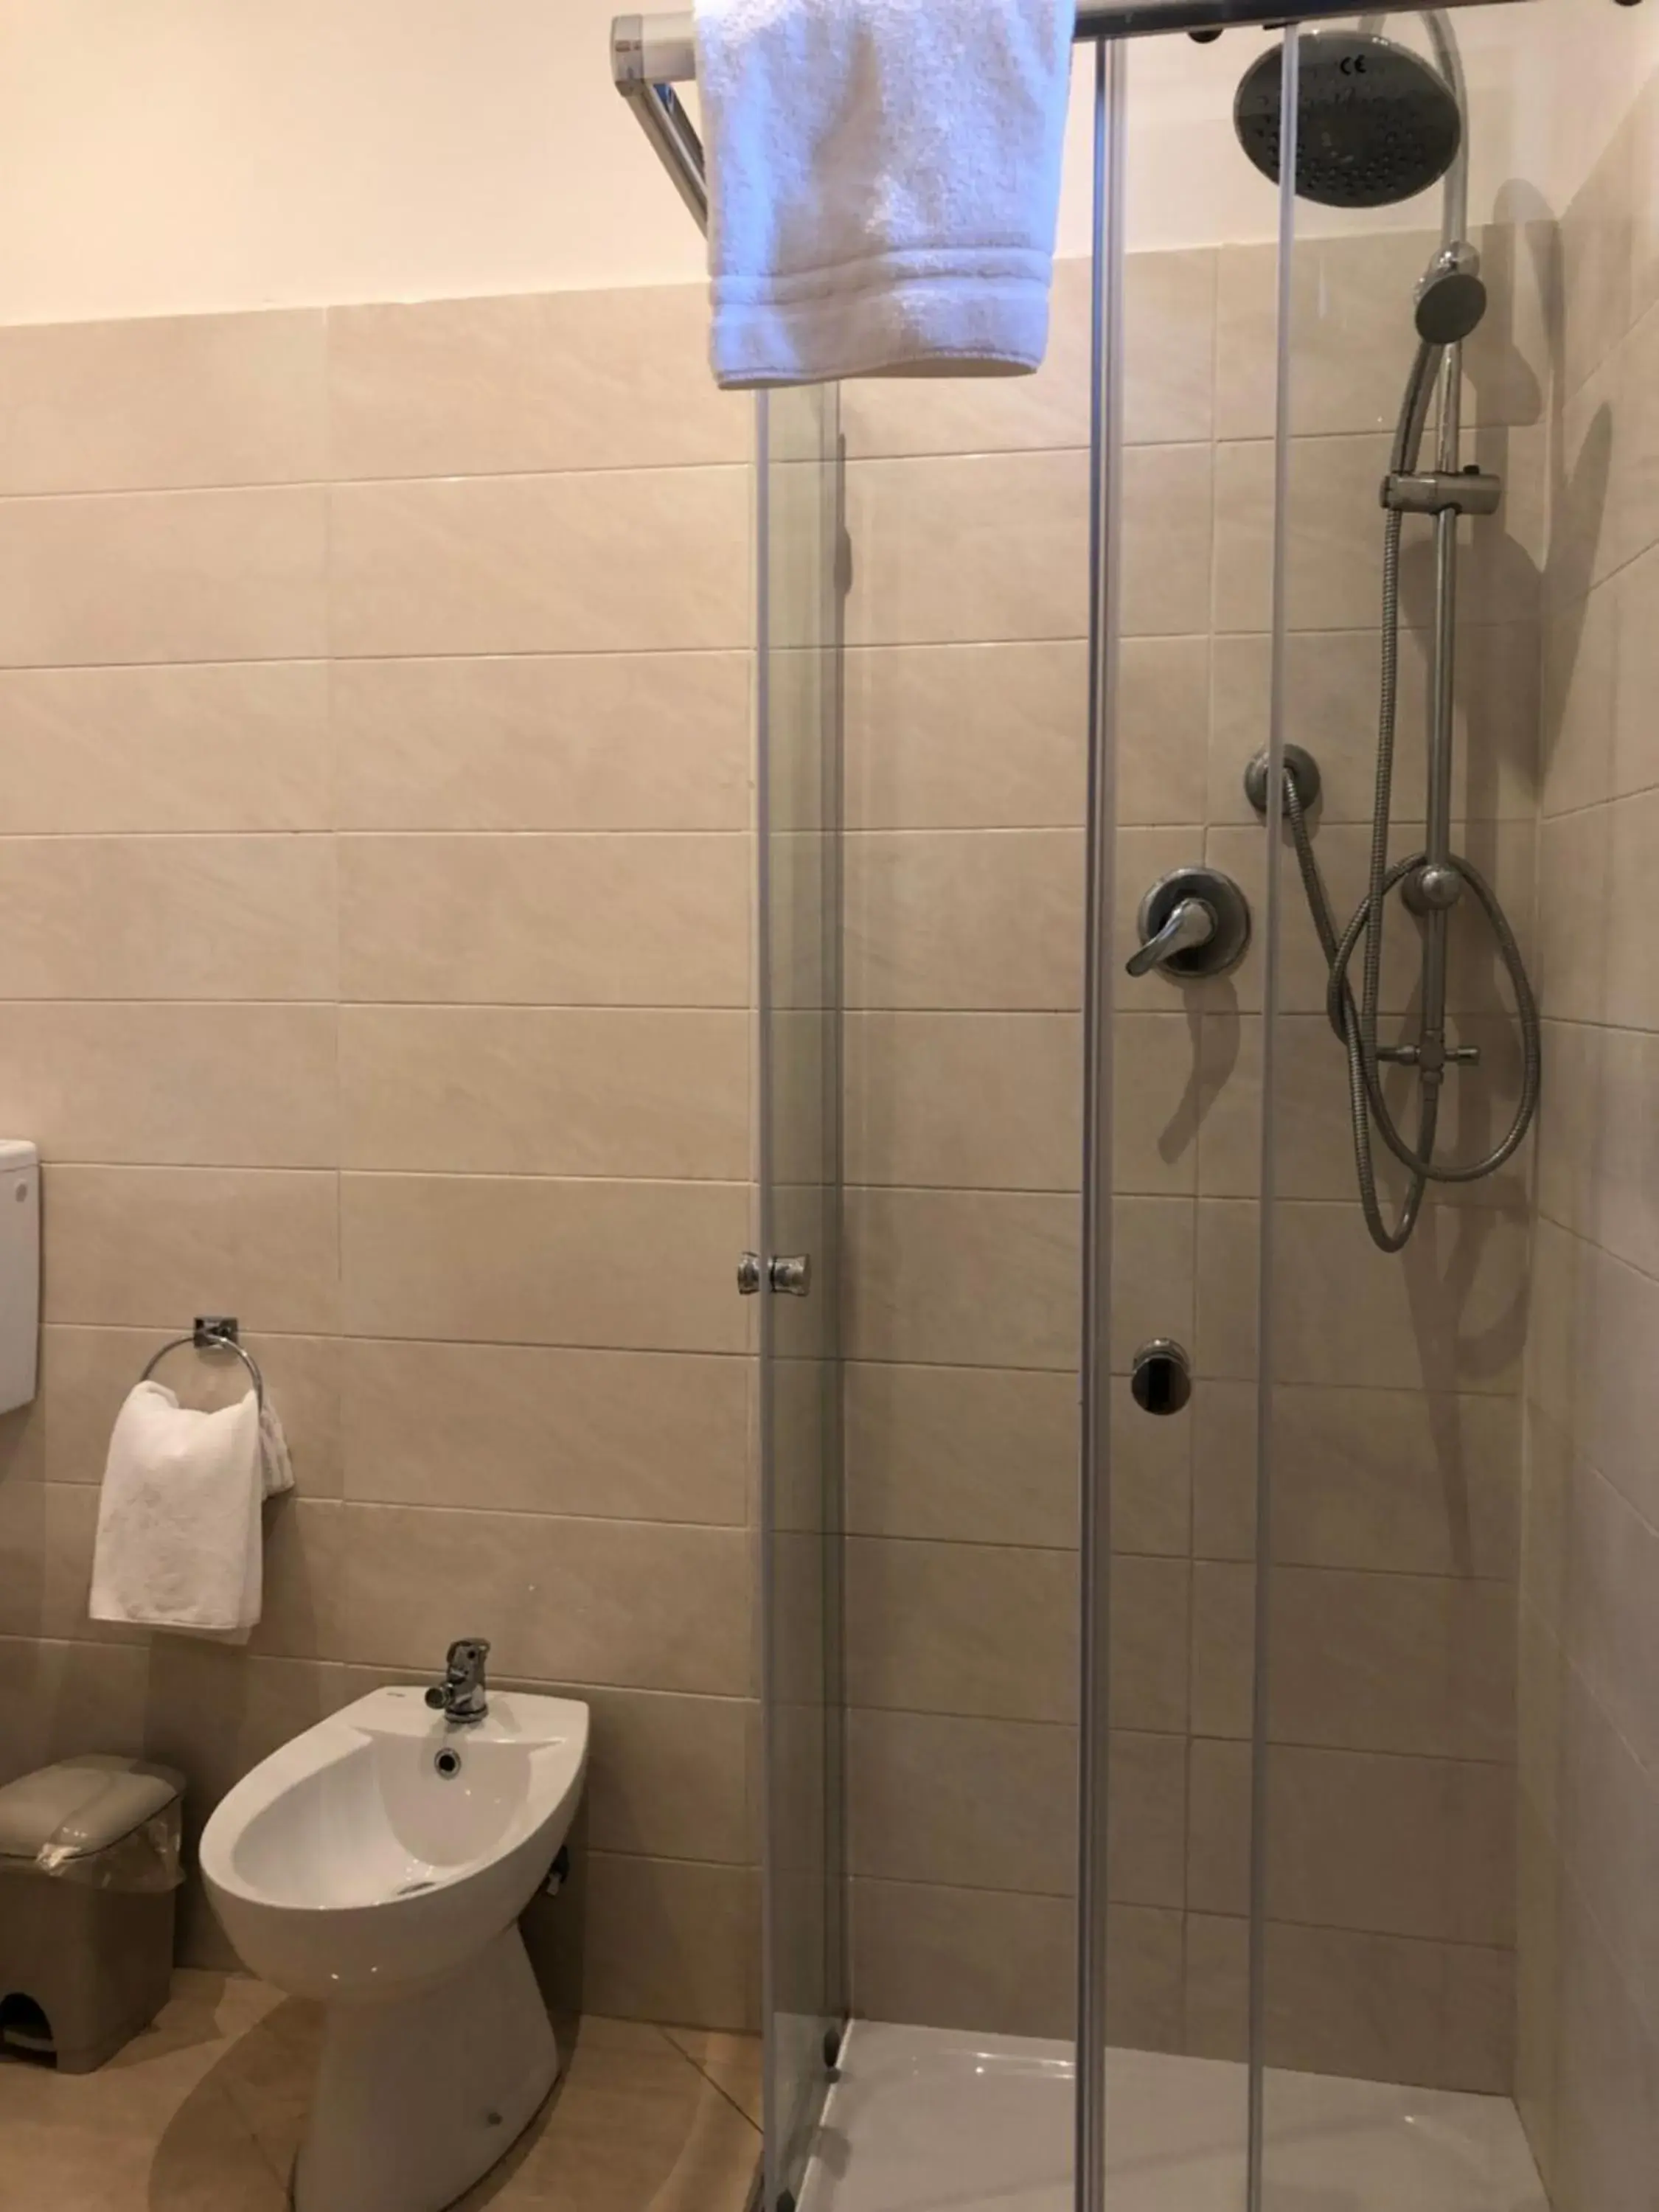 Bathroom in Hotel Chopin